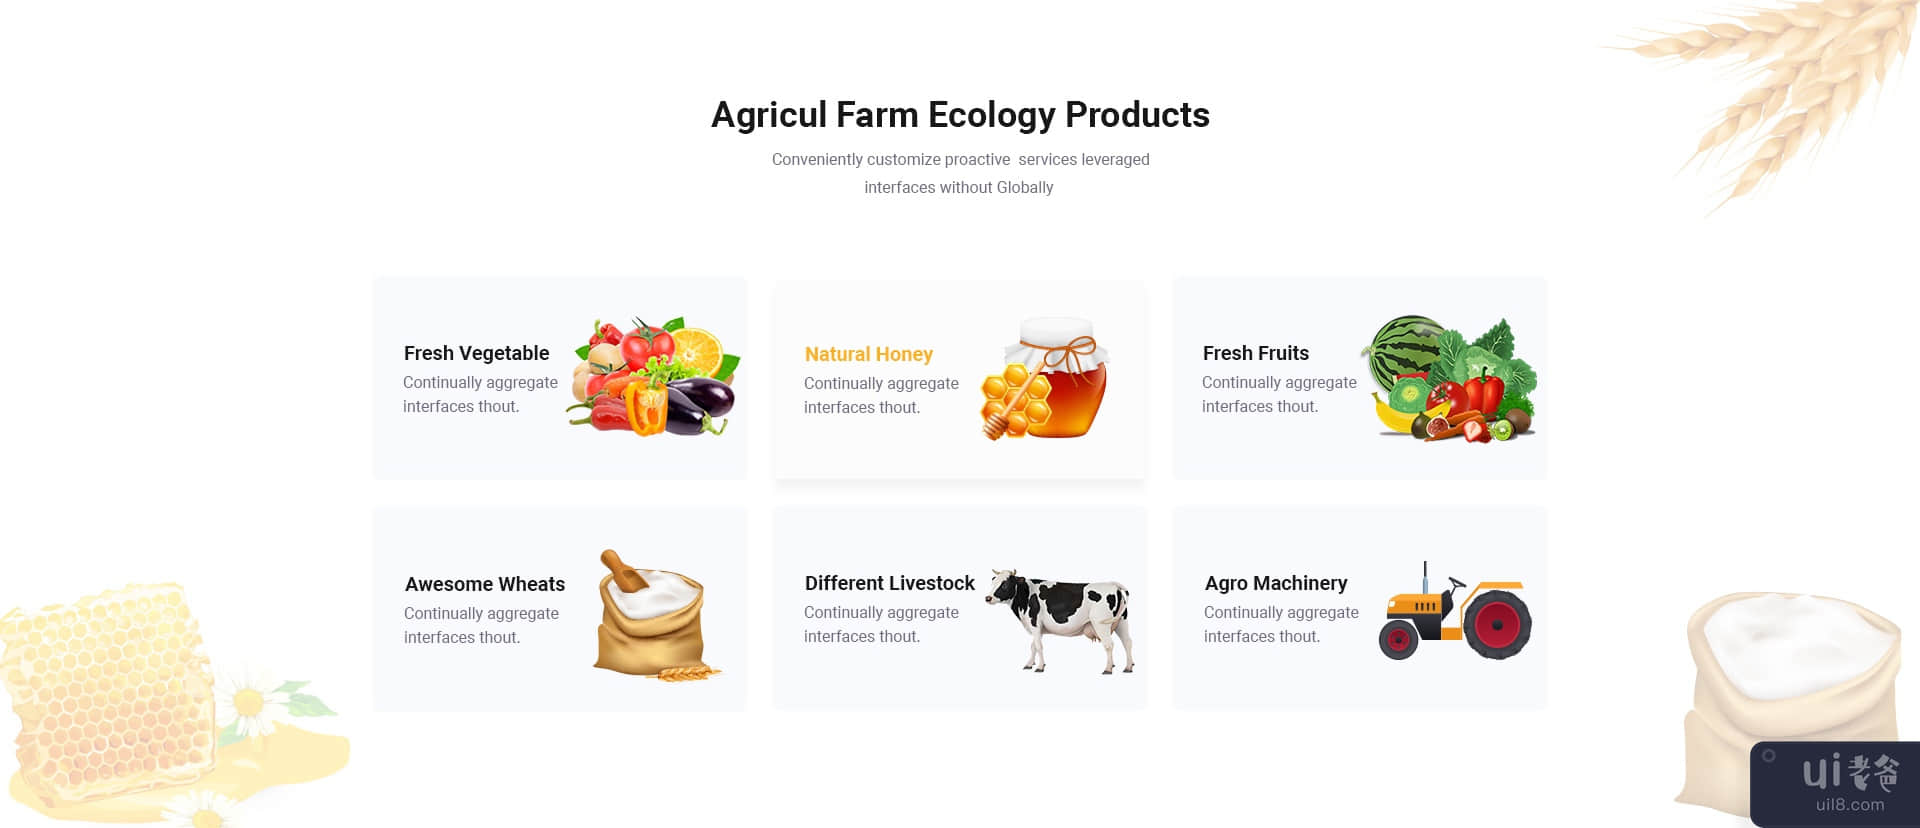 AgriculFarm - 农业和有机食品 PSD 模板(AgriculFarm - Agriculture & Organic Food PSD Template)插图1